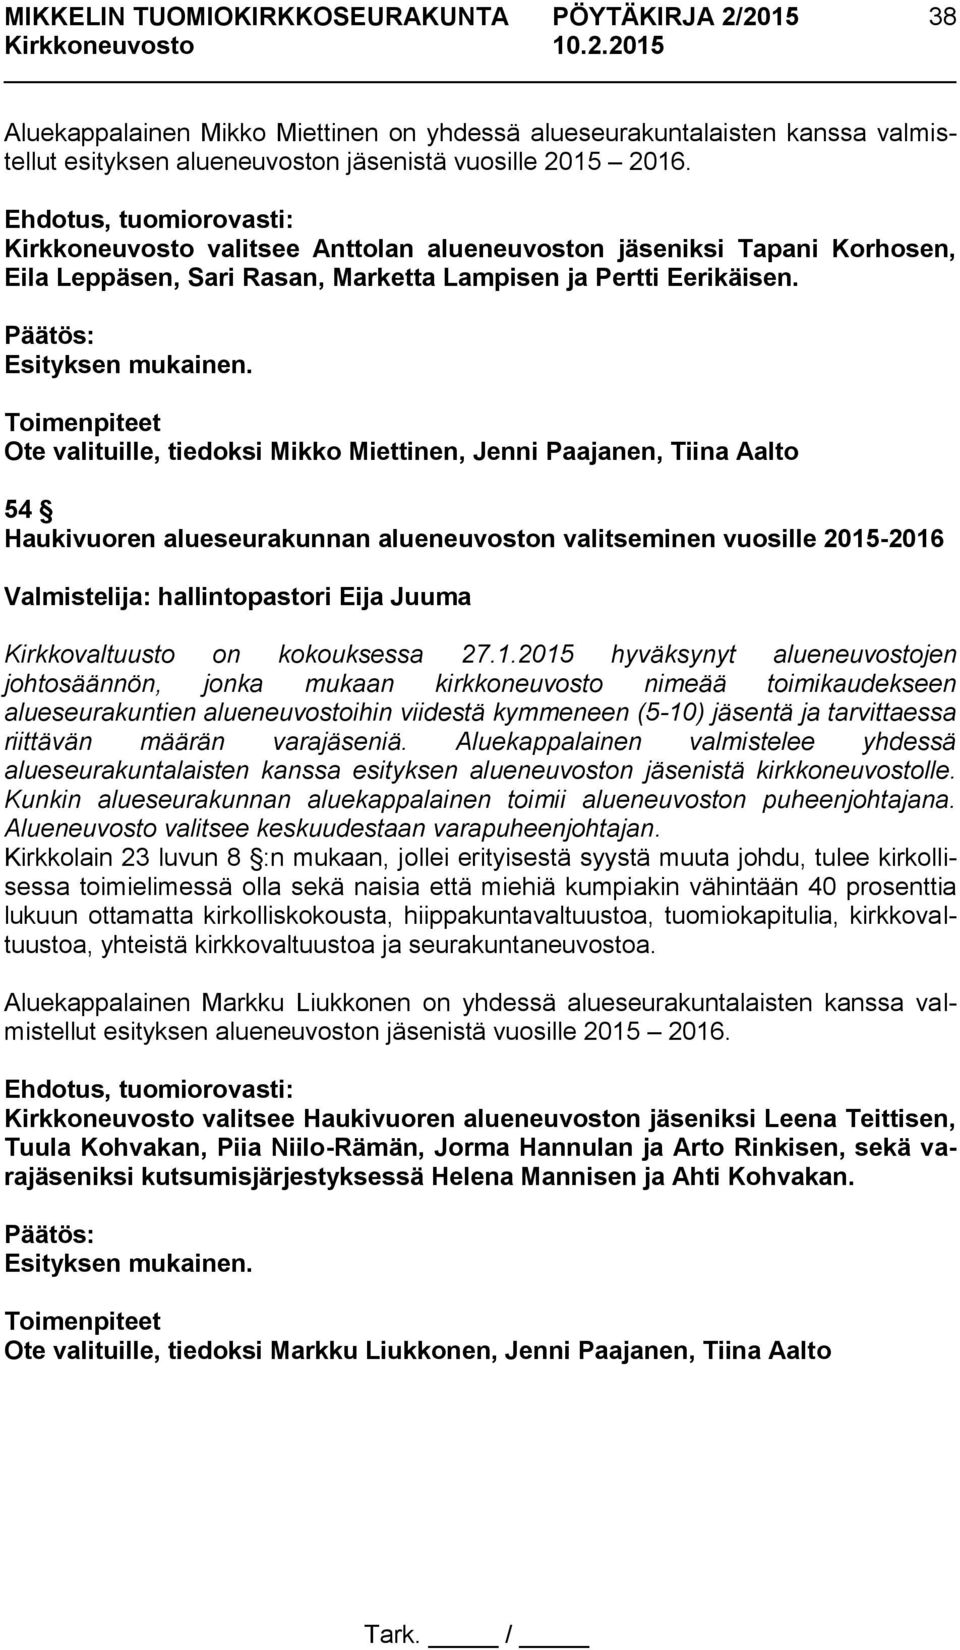 Ote valituille, tiedoksi Mikko Miettinen, Jenni Paajanen, Tiina Aalto 54 Haukivuoren alueseurakunnan alueneuvoston valitseminen vuosille 2015-2016 Valmistelija: hallintopastori Eija Juuma